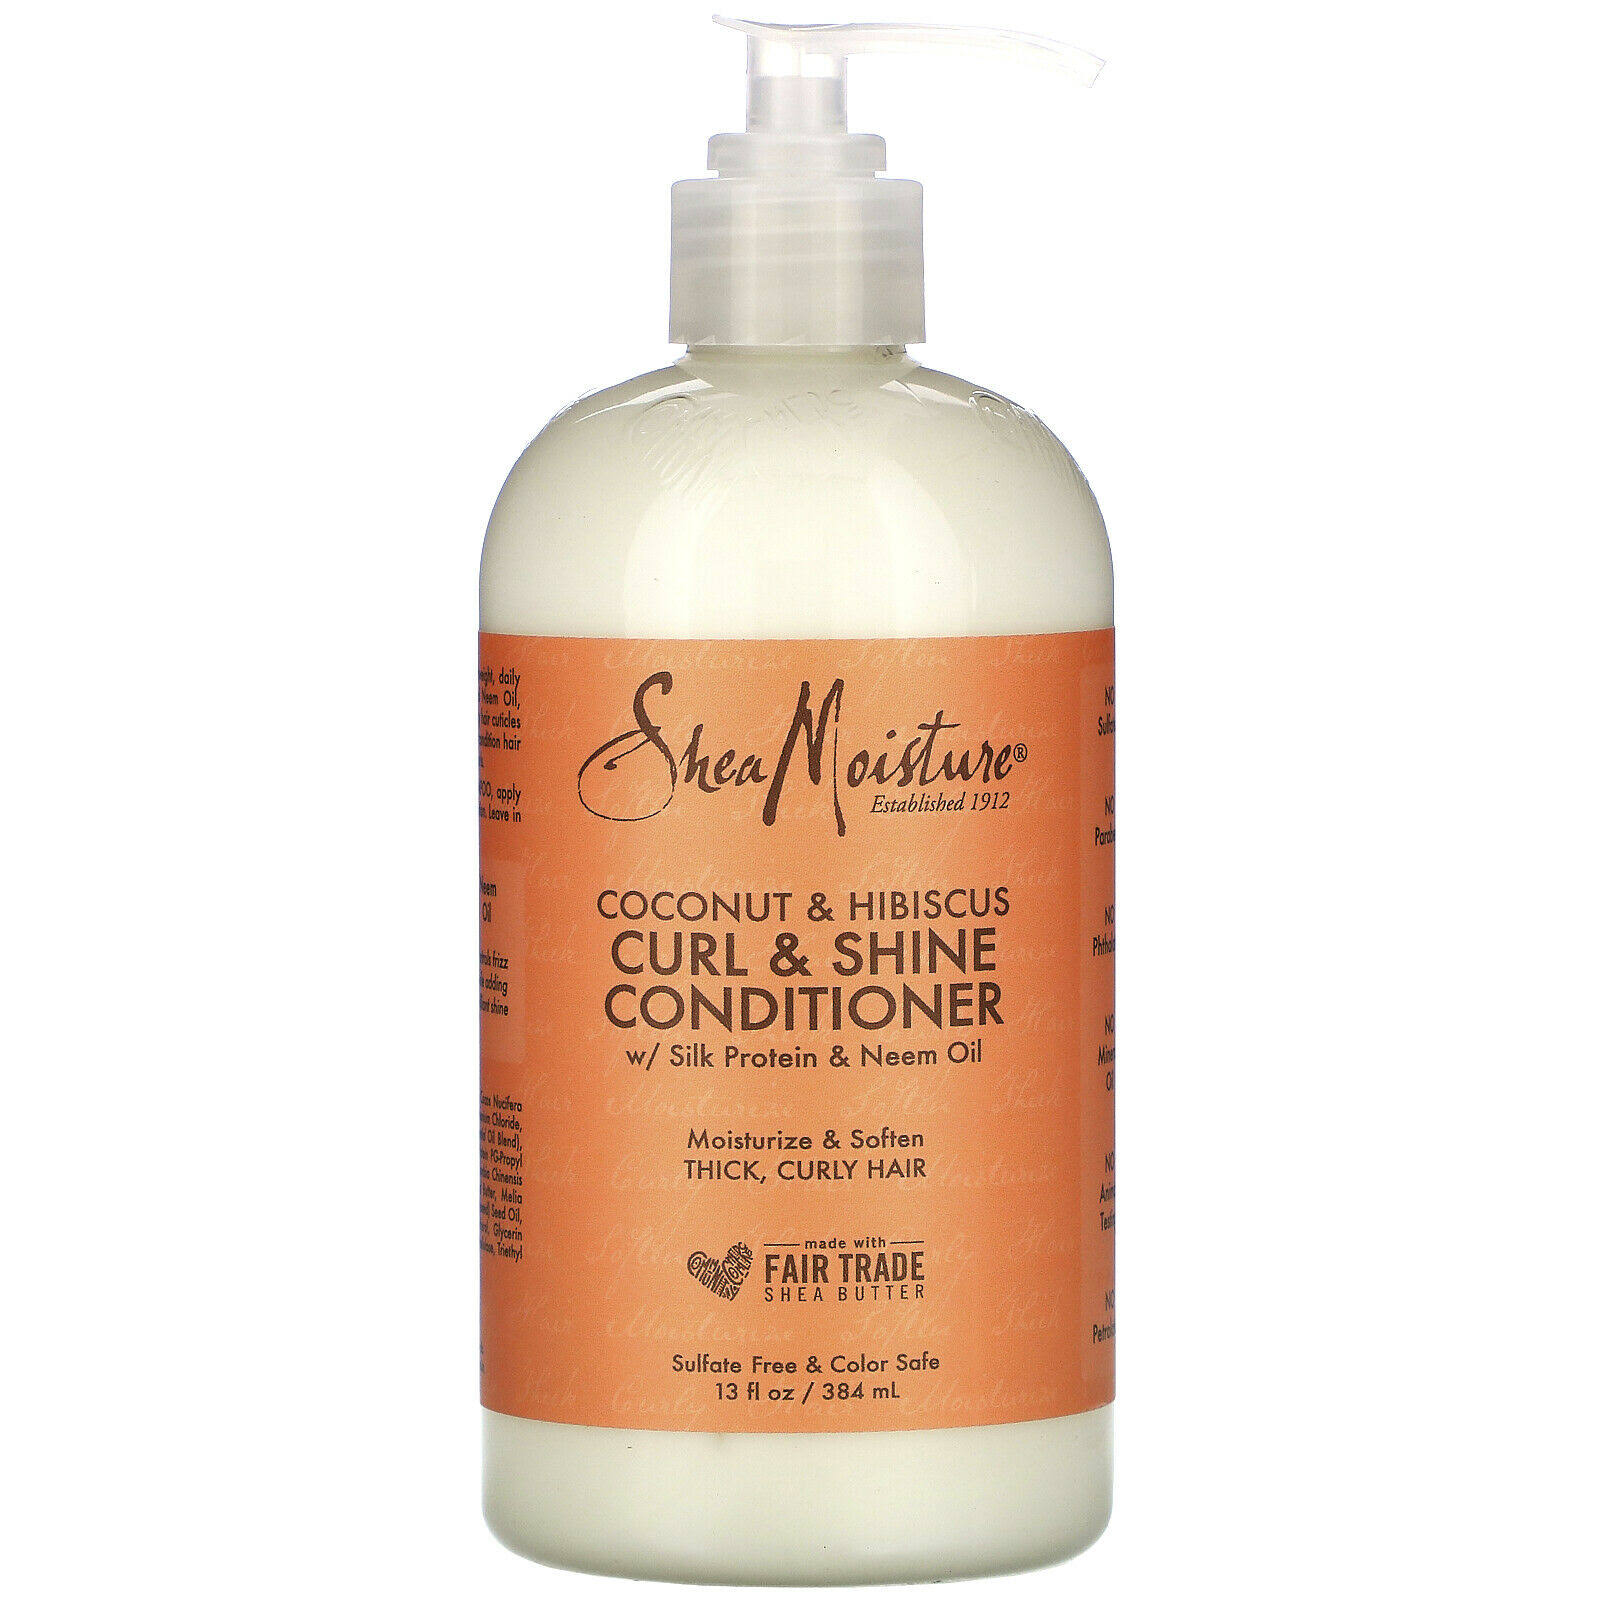 Shea Moisture Curl & Shine Conditioner - 380ml, Coconut & Hibiscus